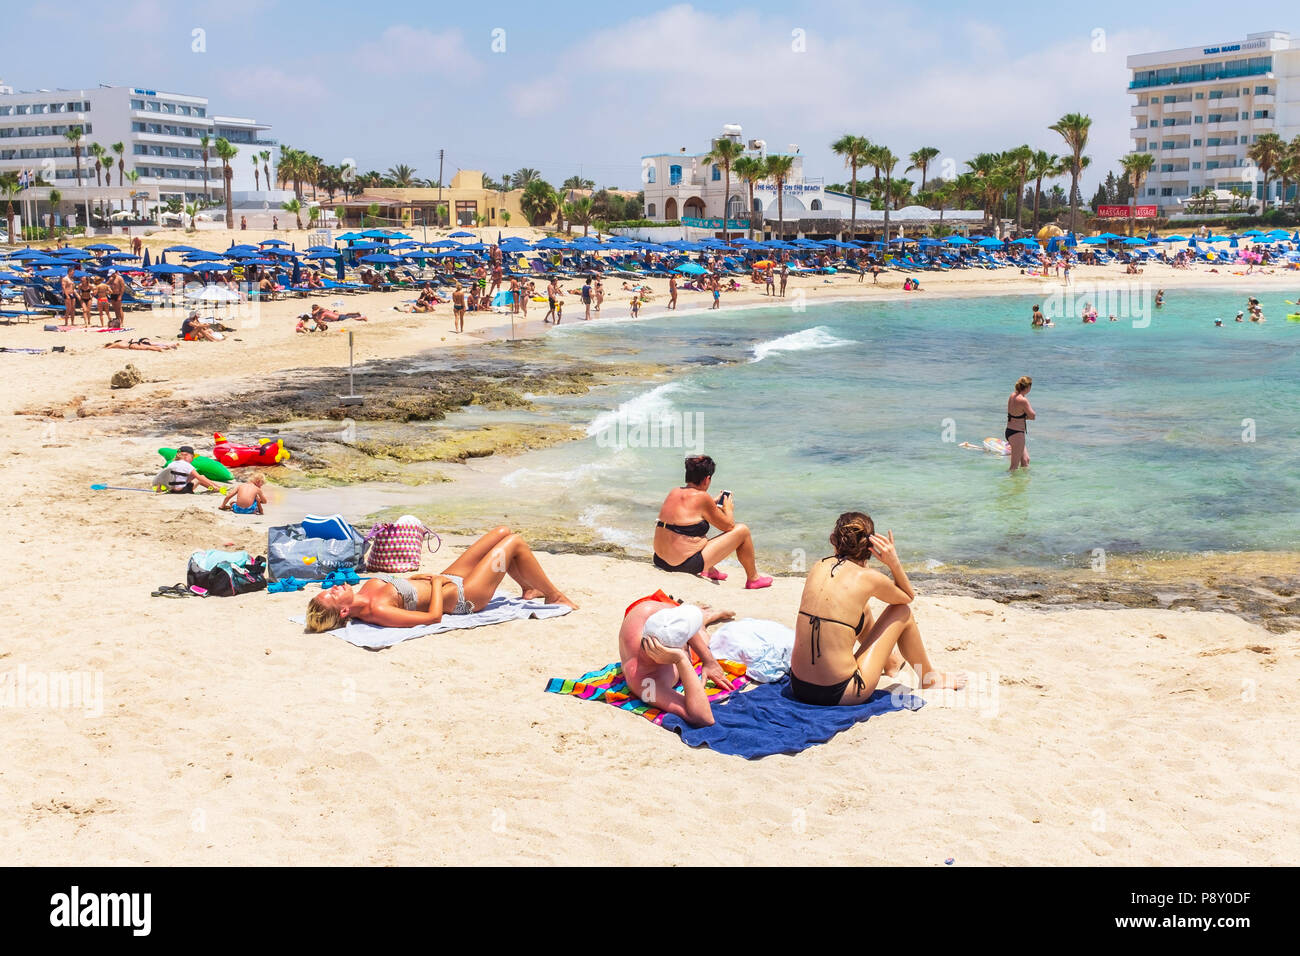 Vathkia Gonia Beach near Ayia Napa, Cyprus Stock Photo